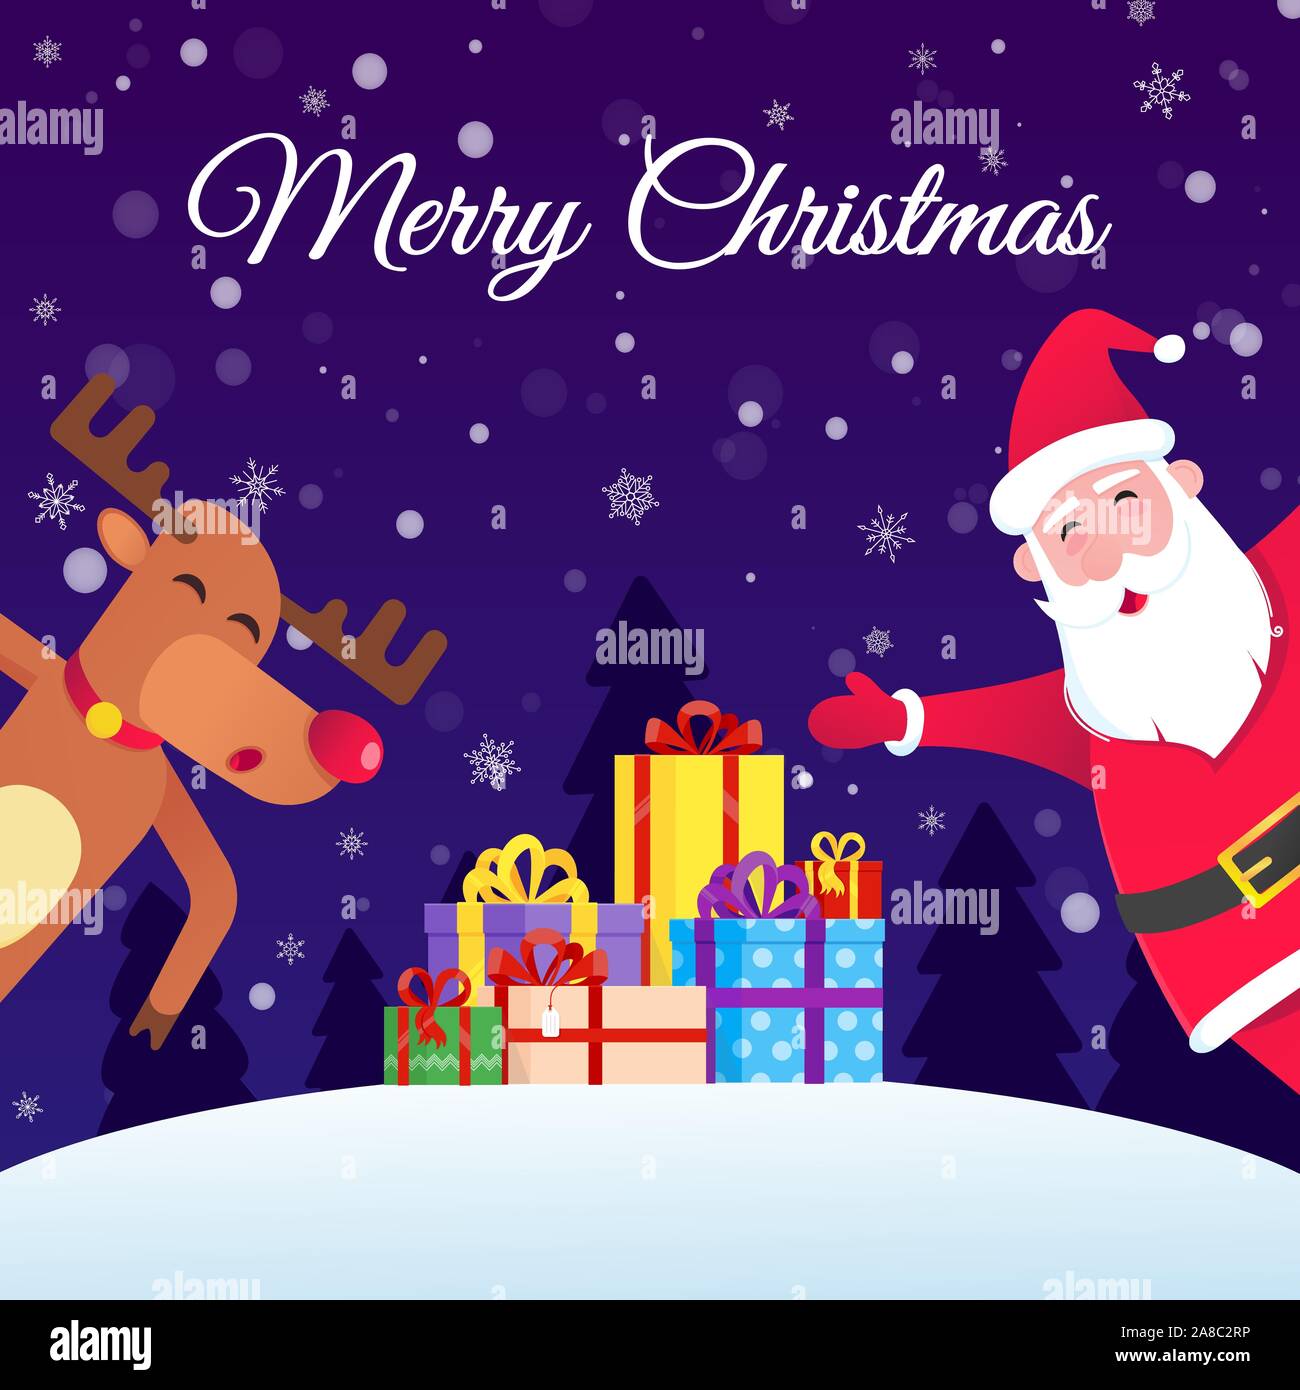 Weihnachtsmann und Rentier mit der roten Nase Weihnachten und ein frohe Weihnachten und ein glückliches Neues Jahr für Sie postkarte Flat Style Design Vector Illustration möchten. Stock Vektor